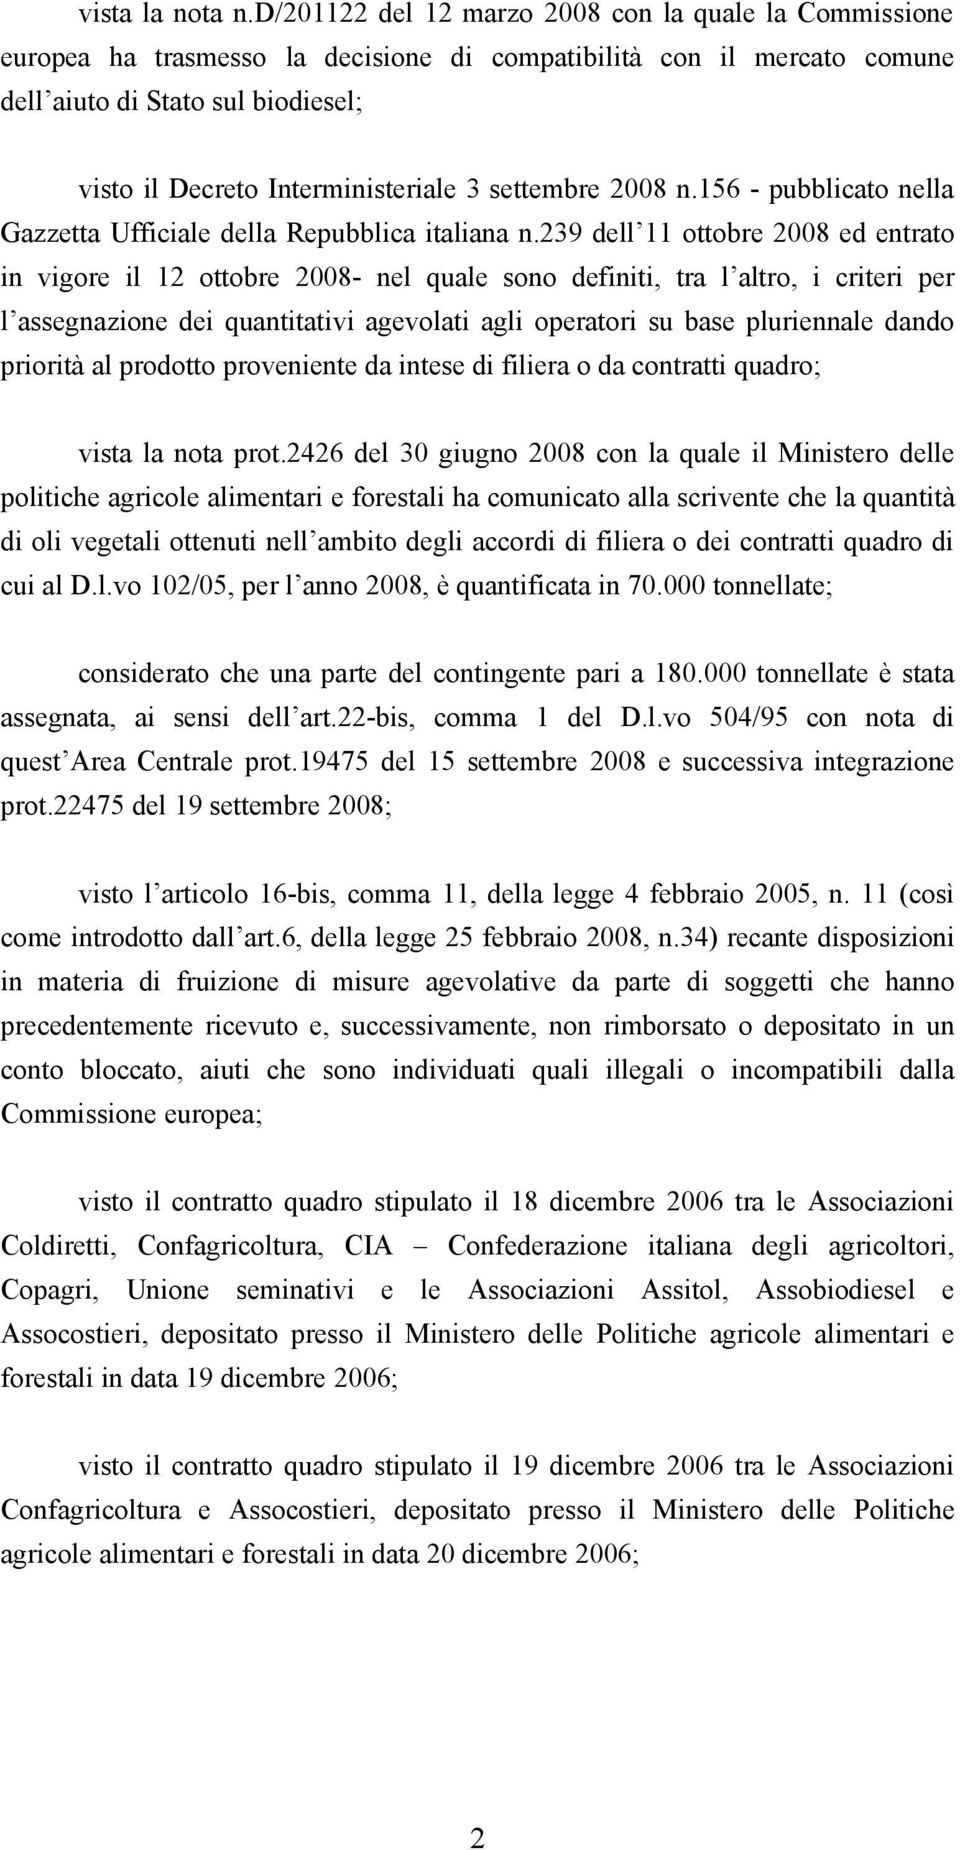 settembre 2008 n.156 - pubblicato nella Gazzetta Ufficiale della Repubblica italiana n.